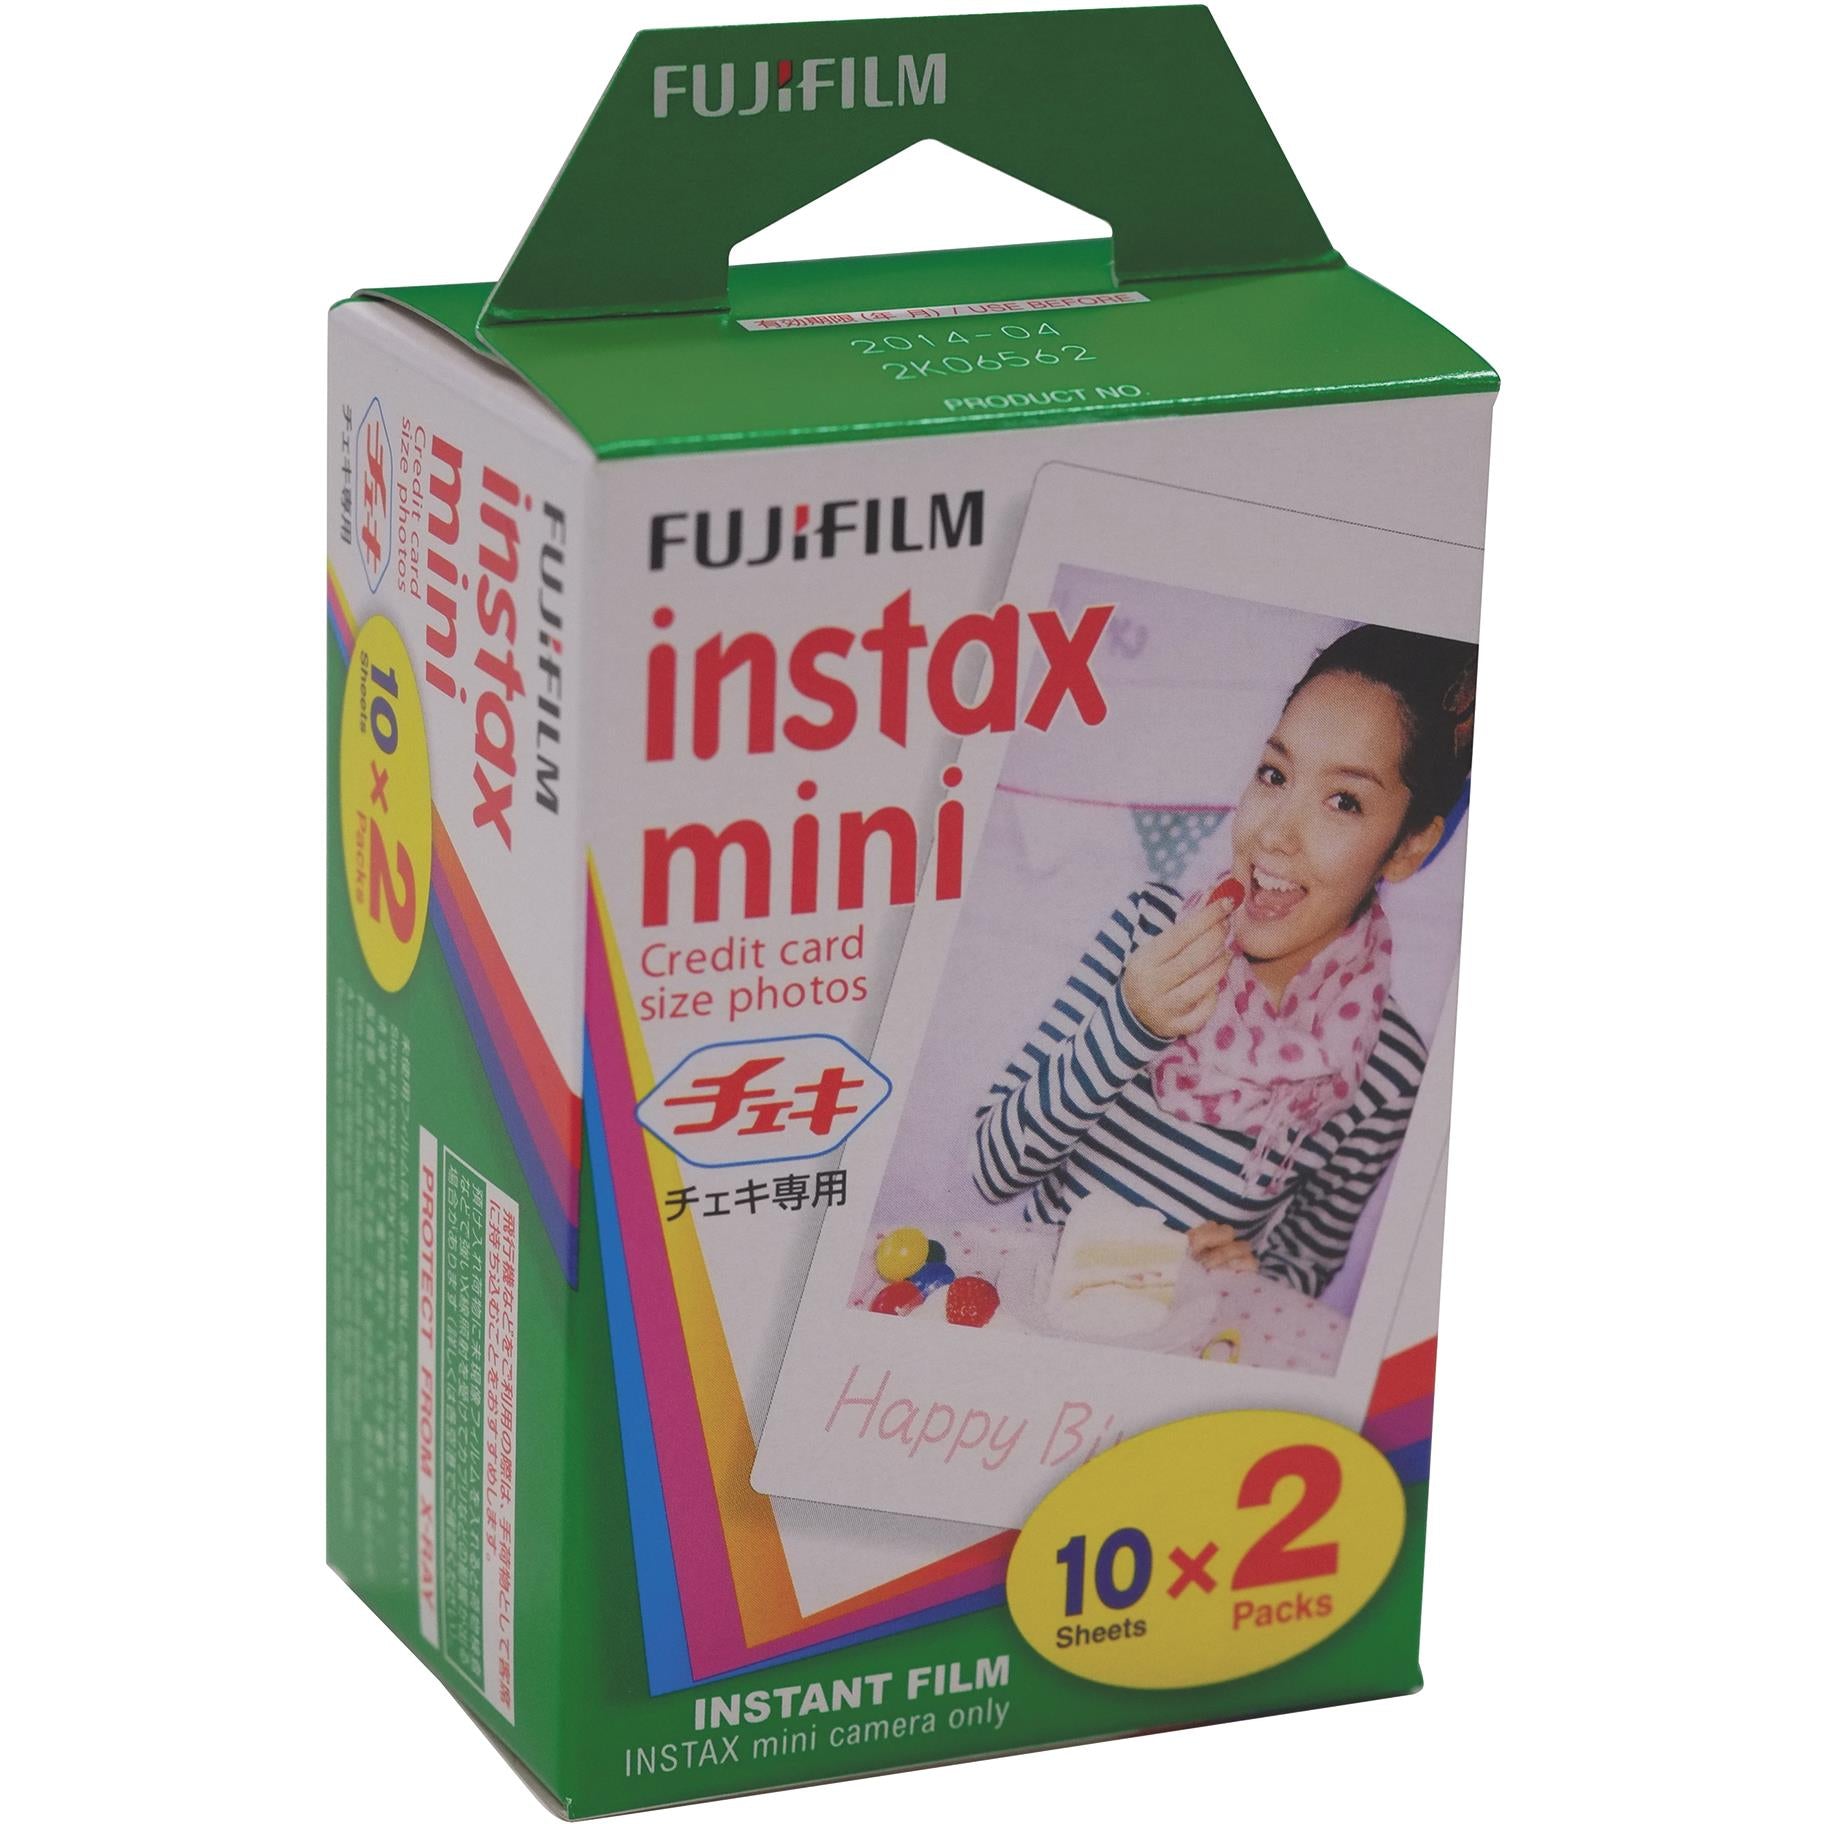 Fujifilm Instax Film Pack) - JB Hi-Fi